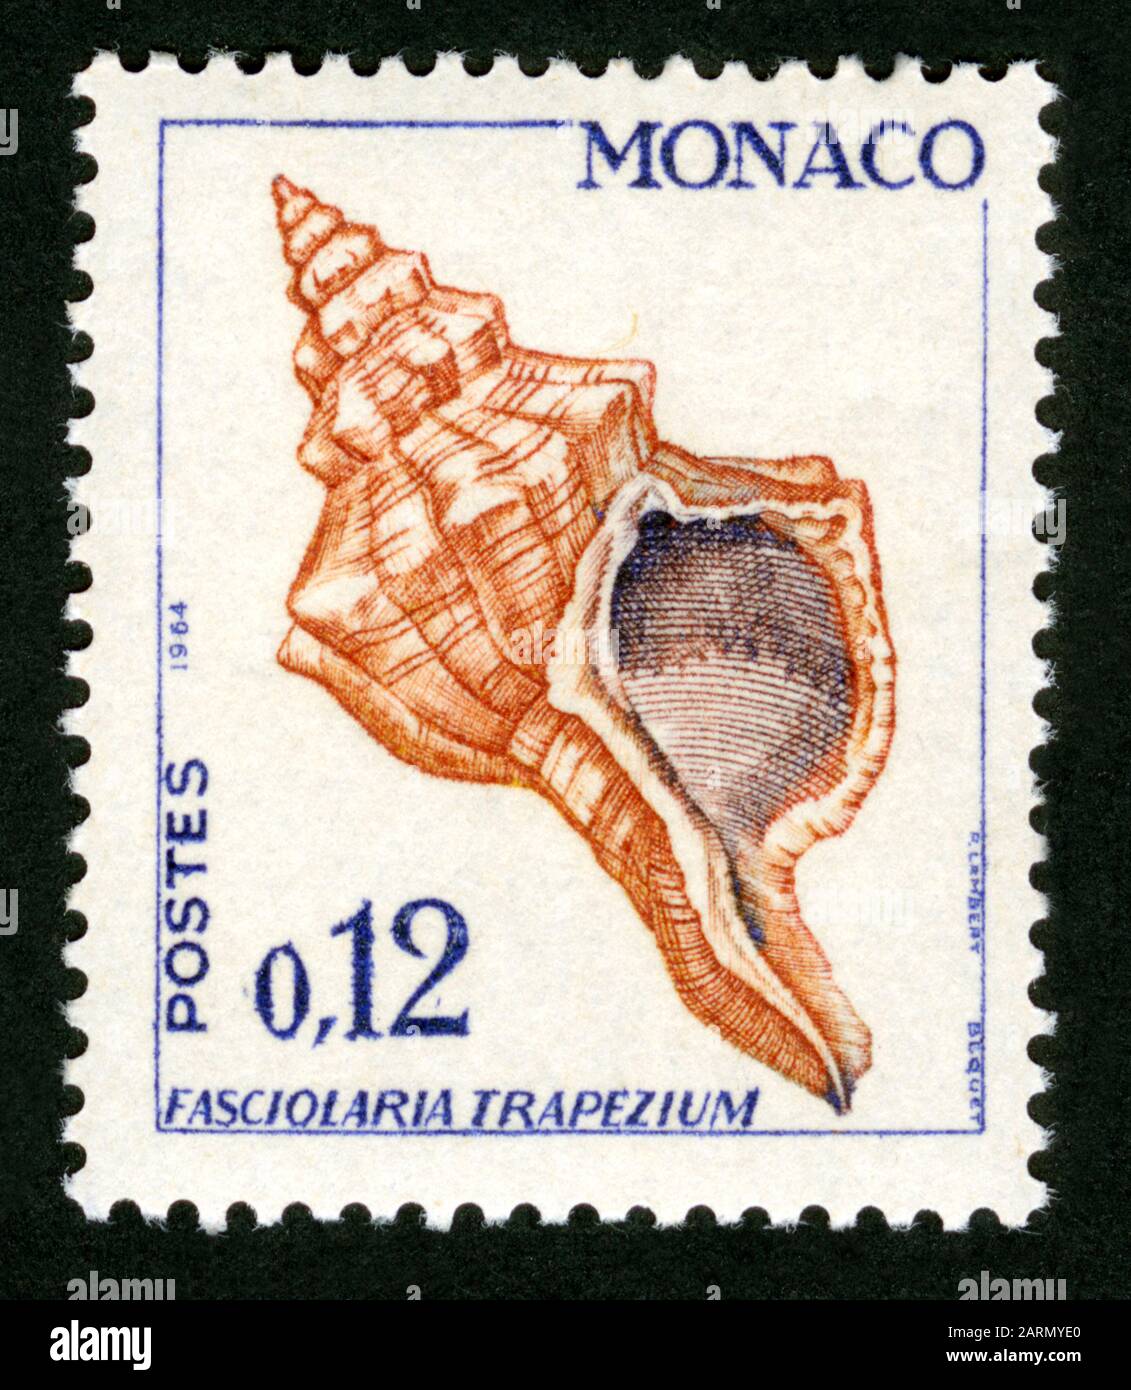 Stamp print in Monaco,Fasciolaria trapezium,shell, clam Stock Photo